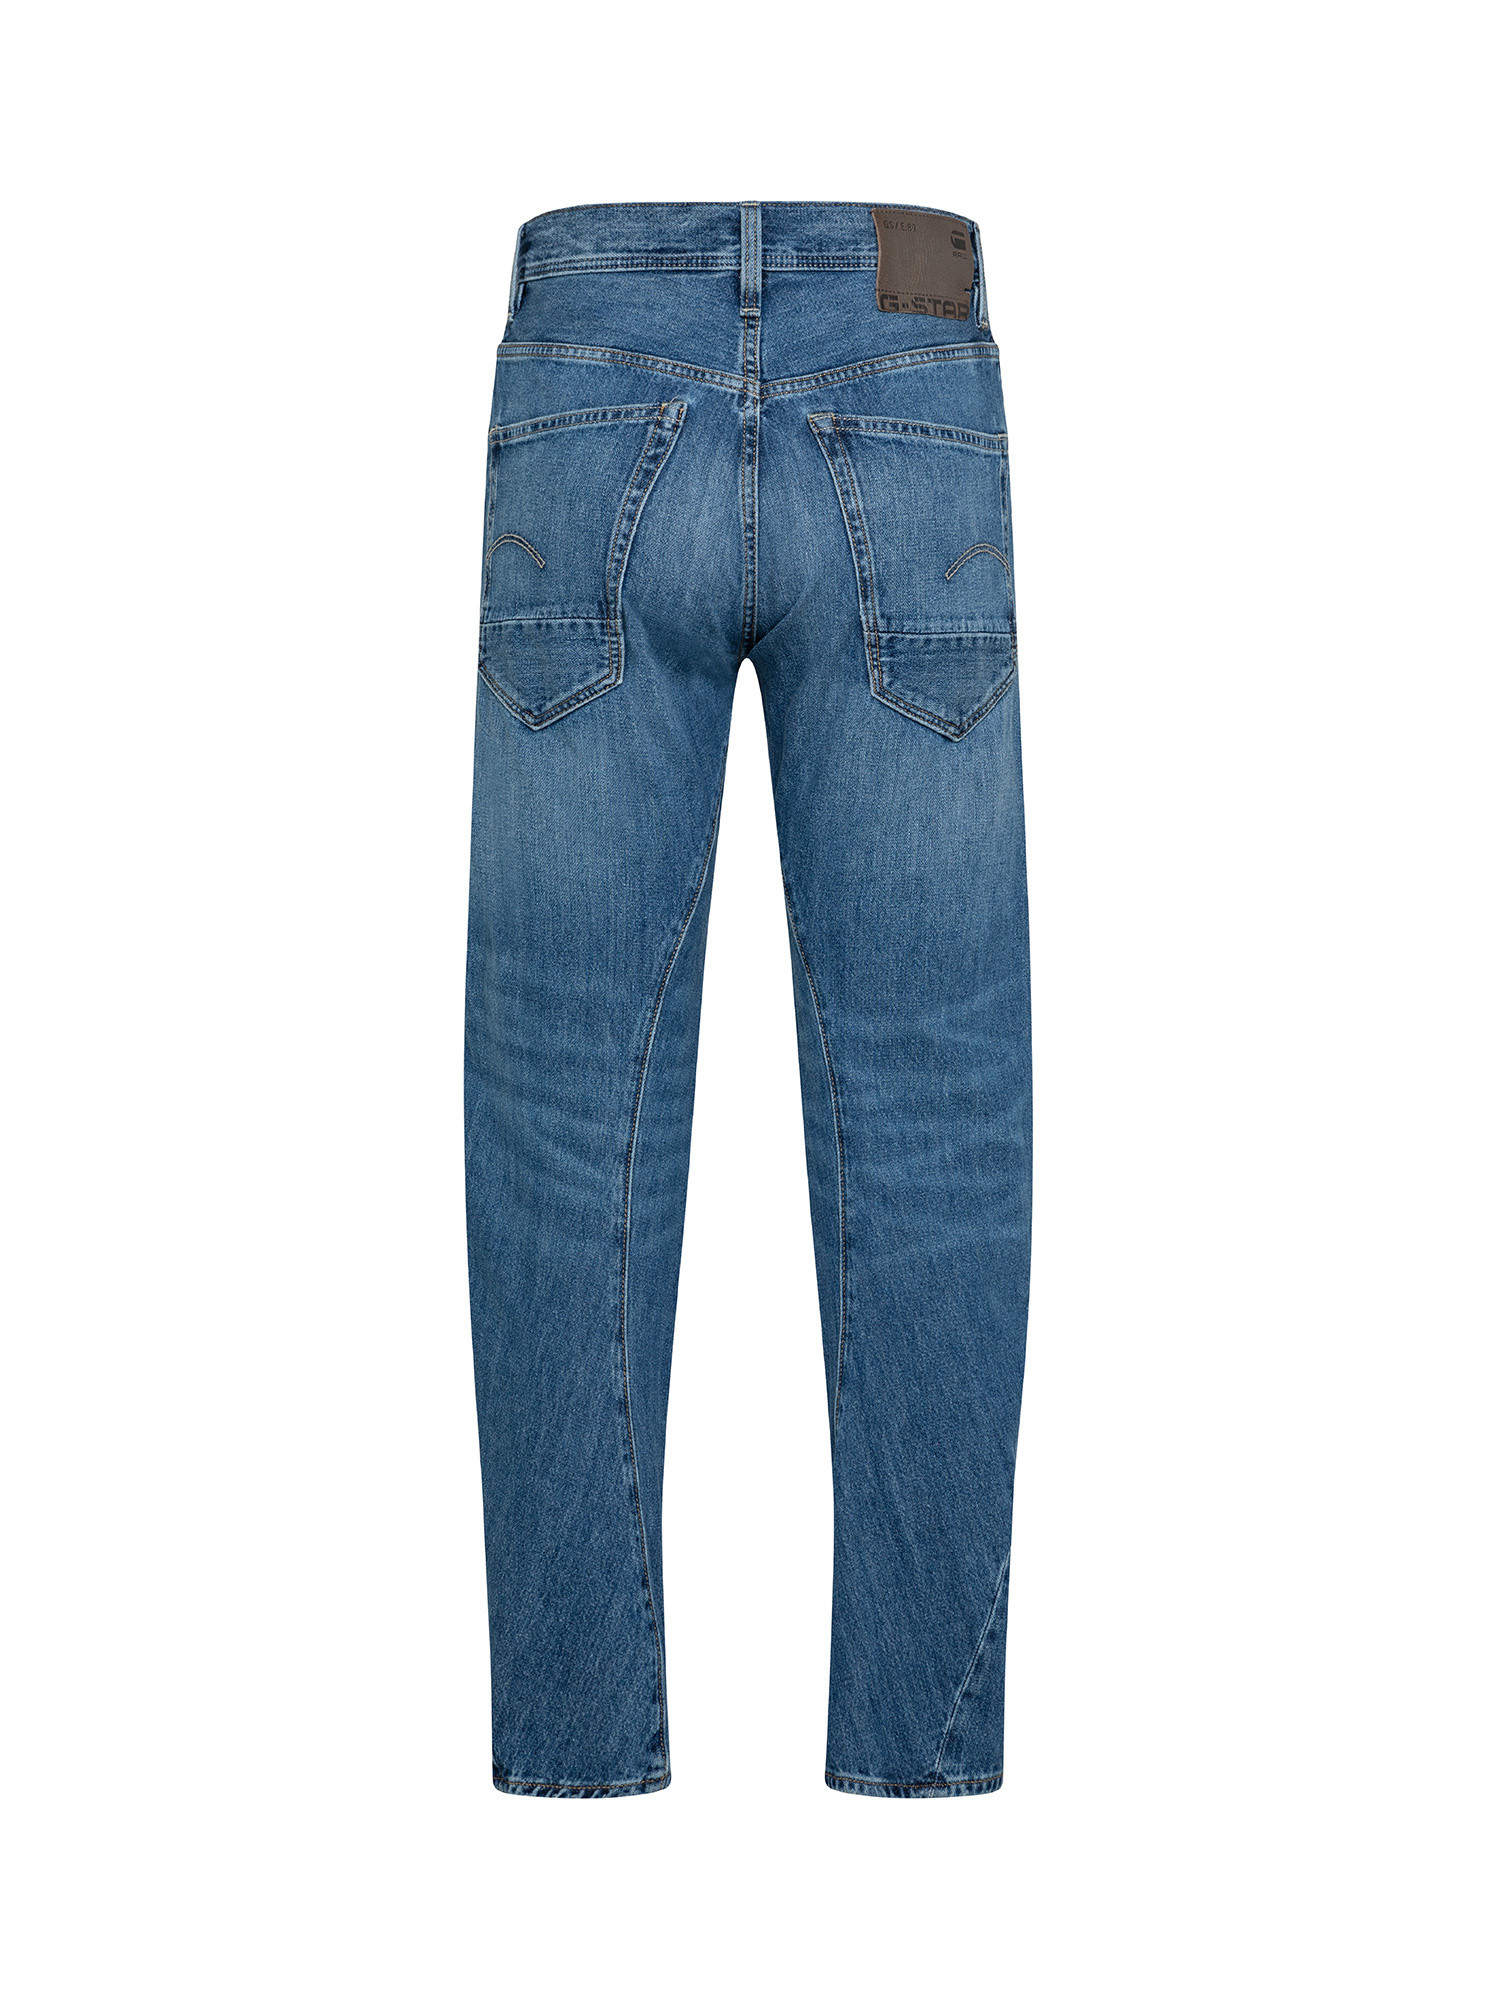 G-Star Five pocket jeans, Denim, large image number 1